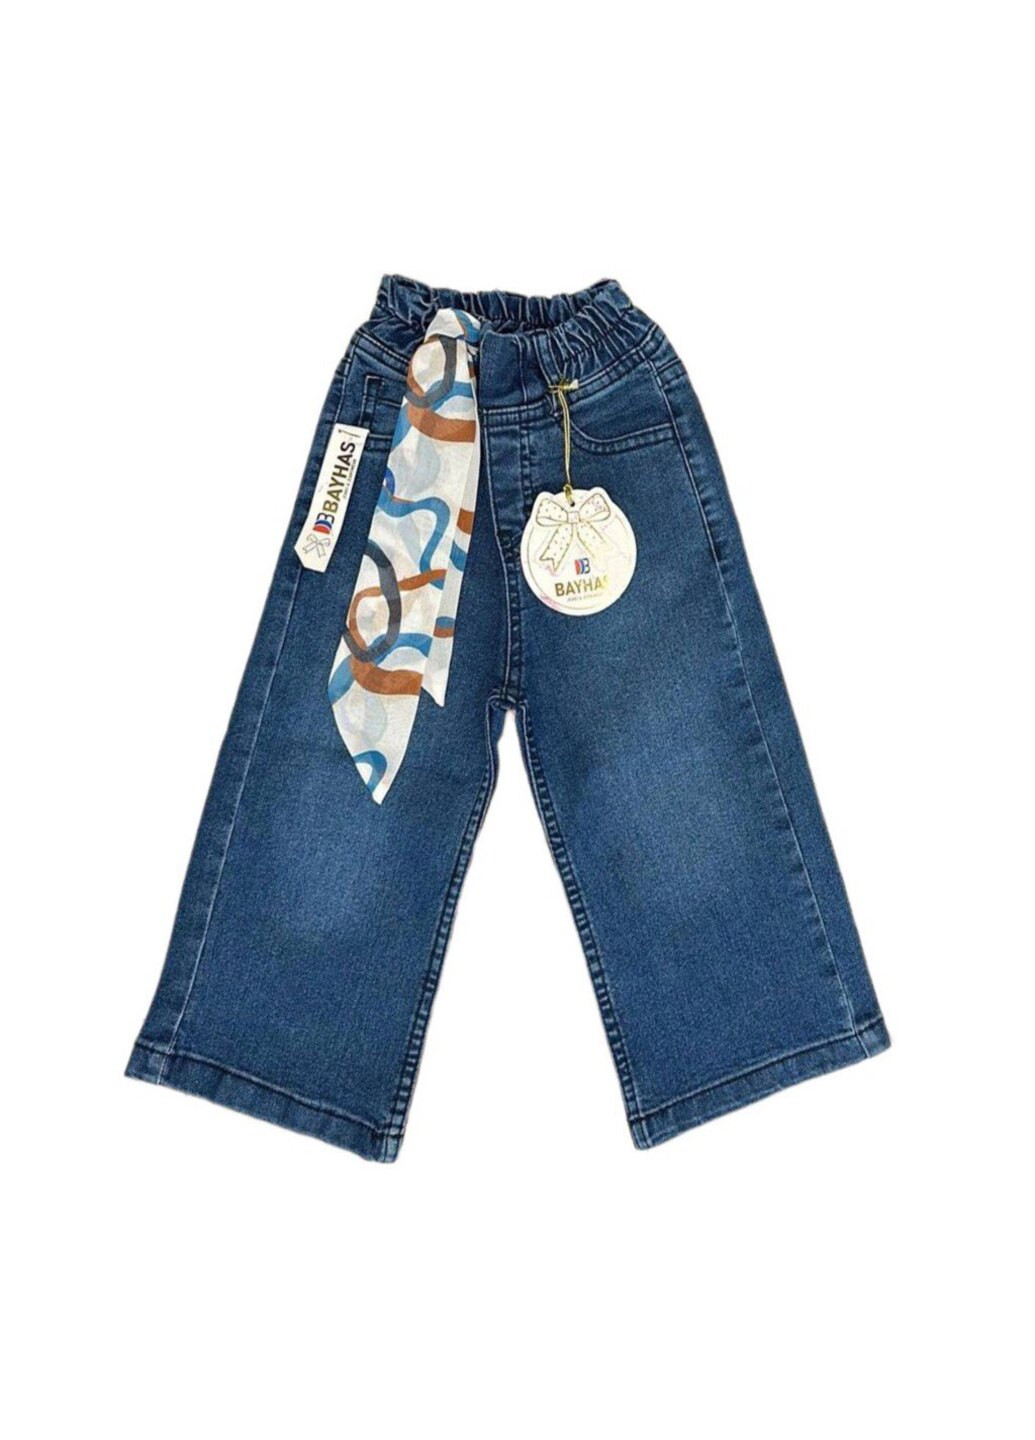 Синие джинсы для девочки Модняшки